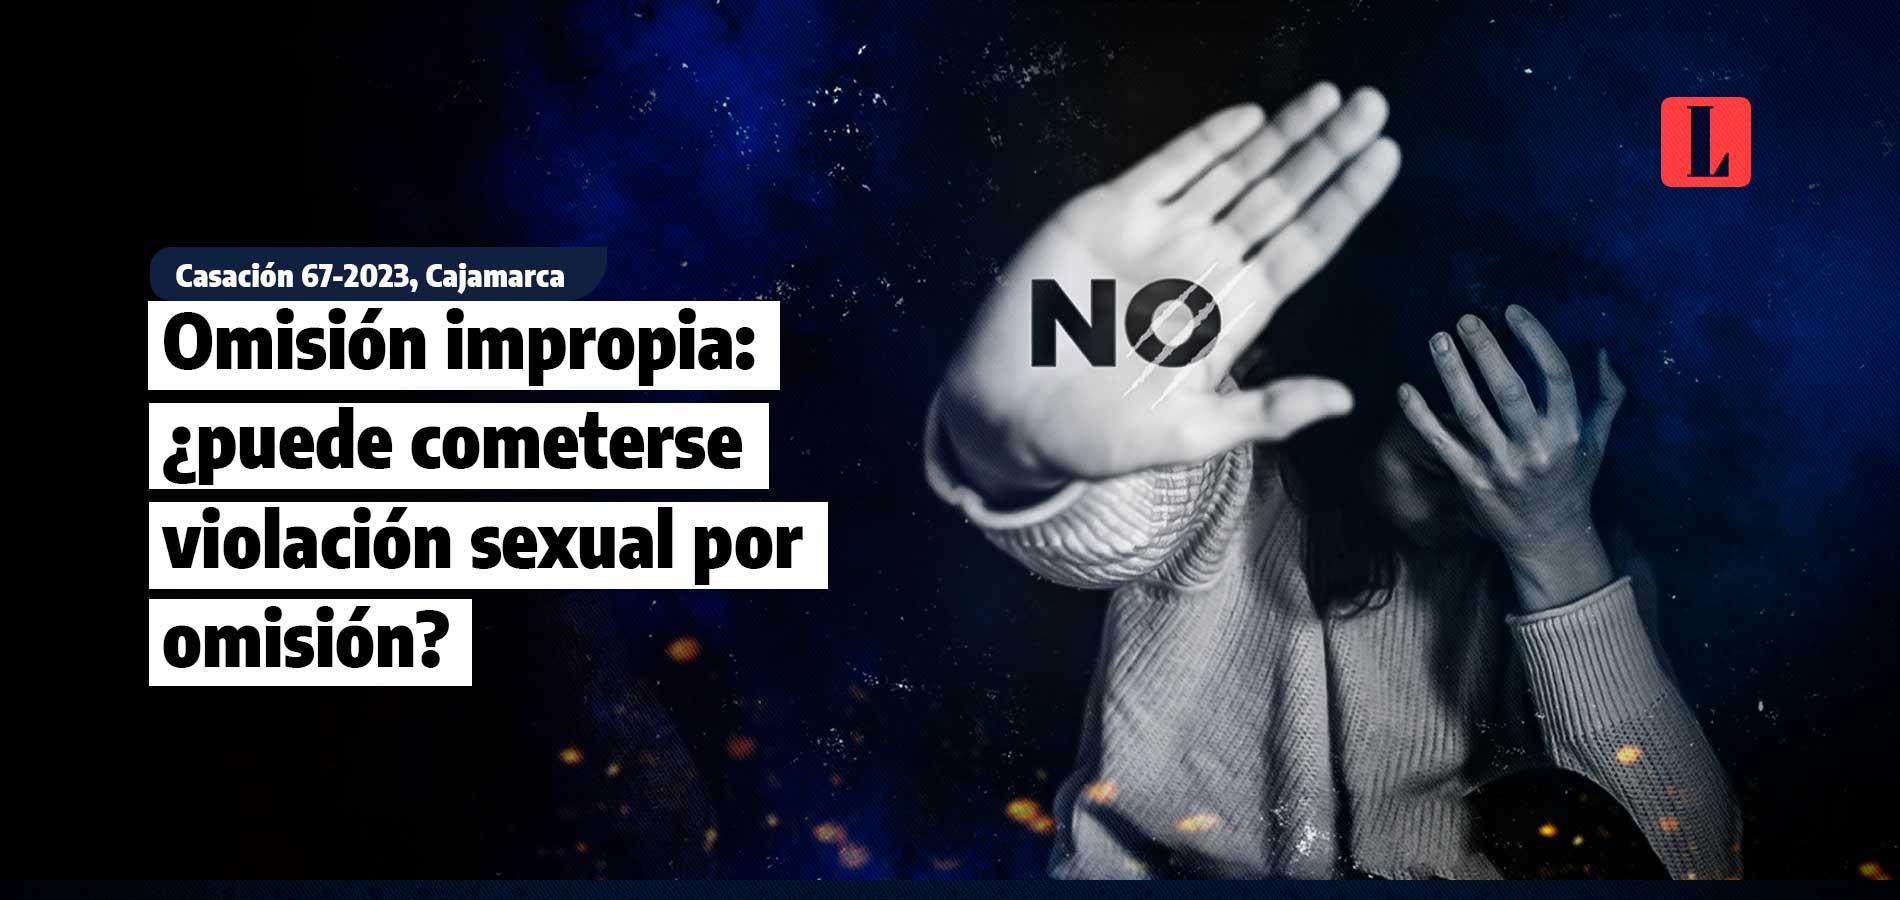 Omision impropia puede cometerse violacion sexual por omision laley.pe